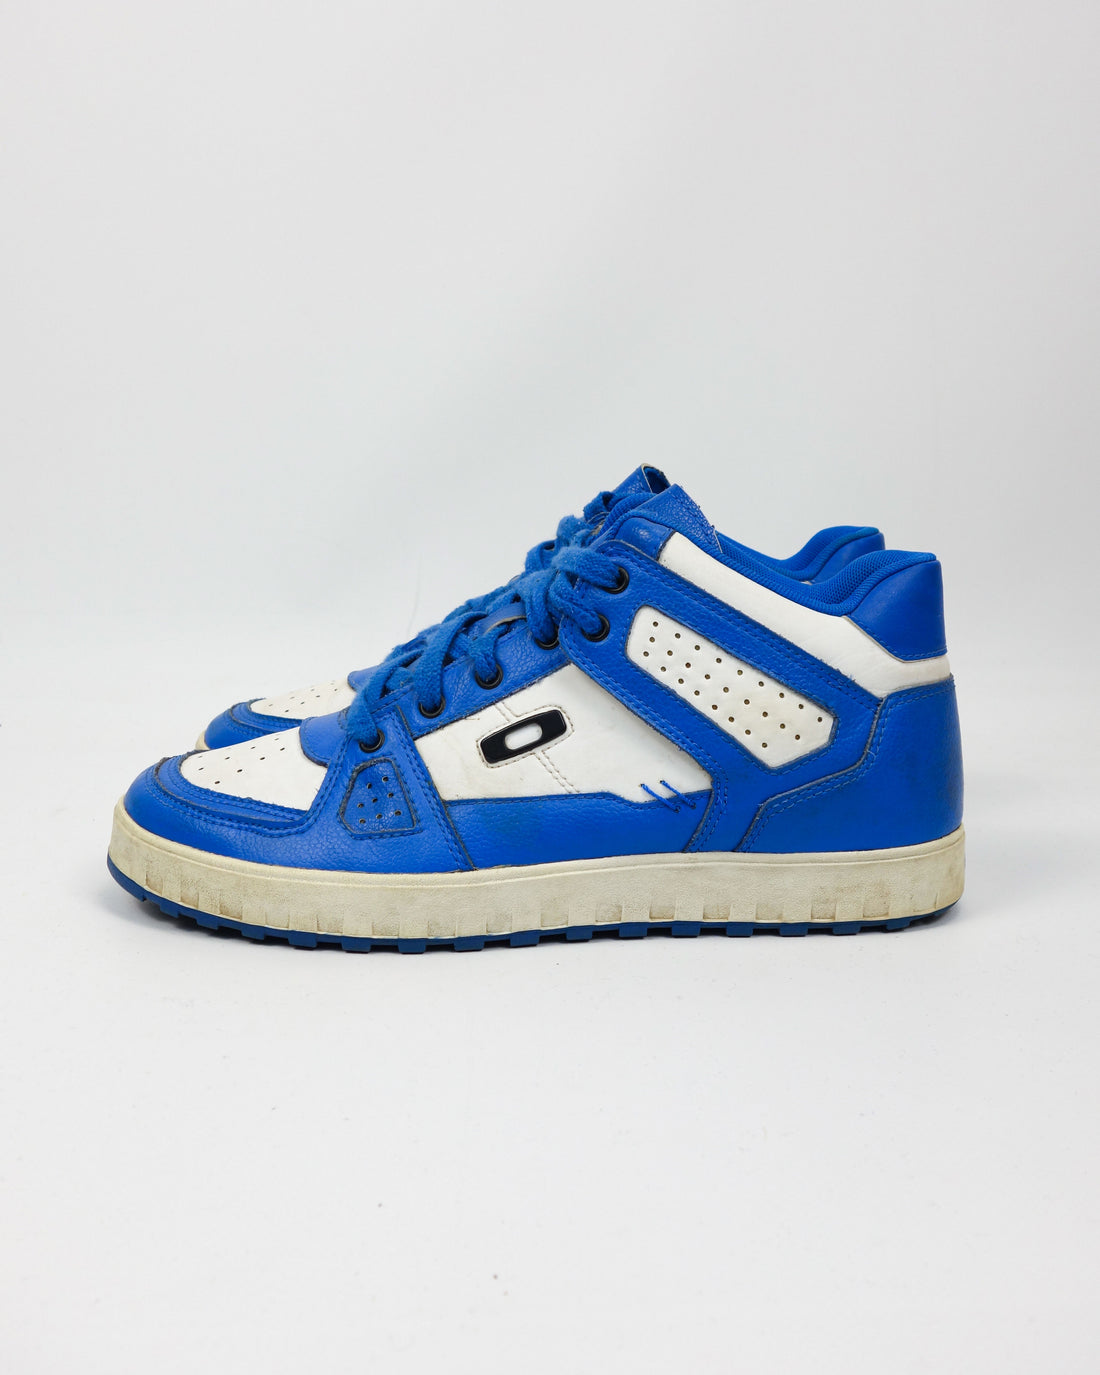 Oakley Megajoule Blue & White Sneakers 2000's